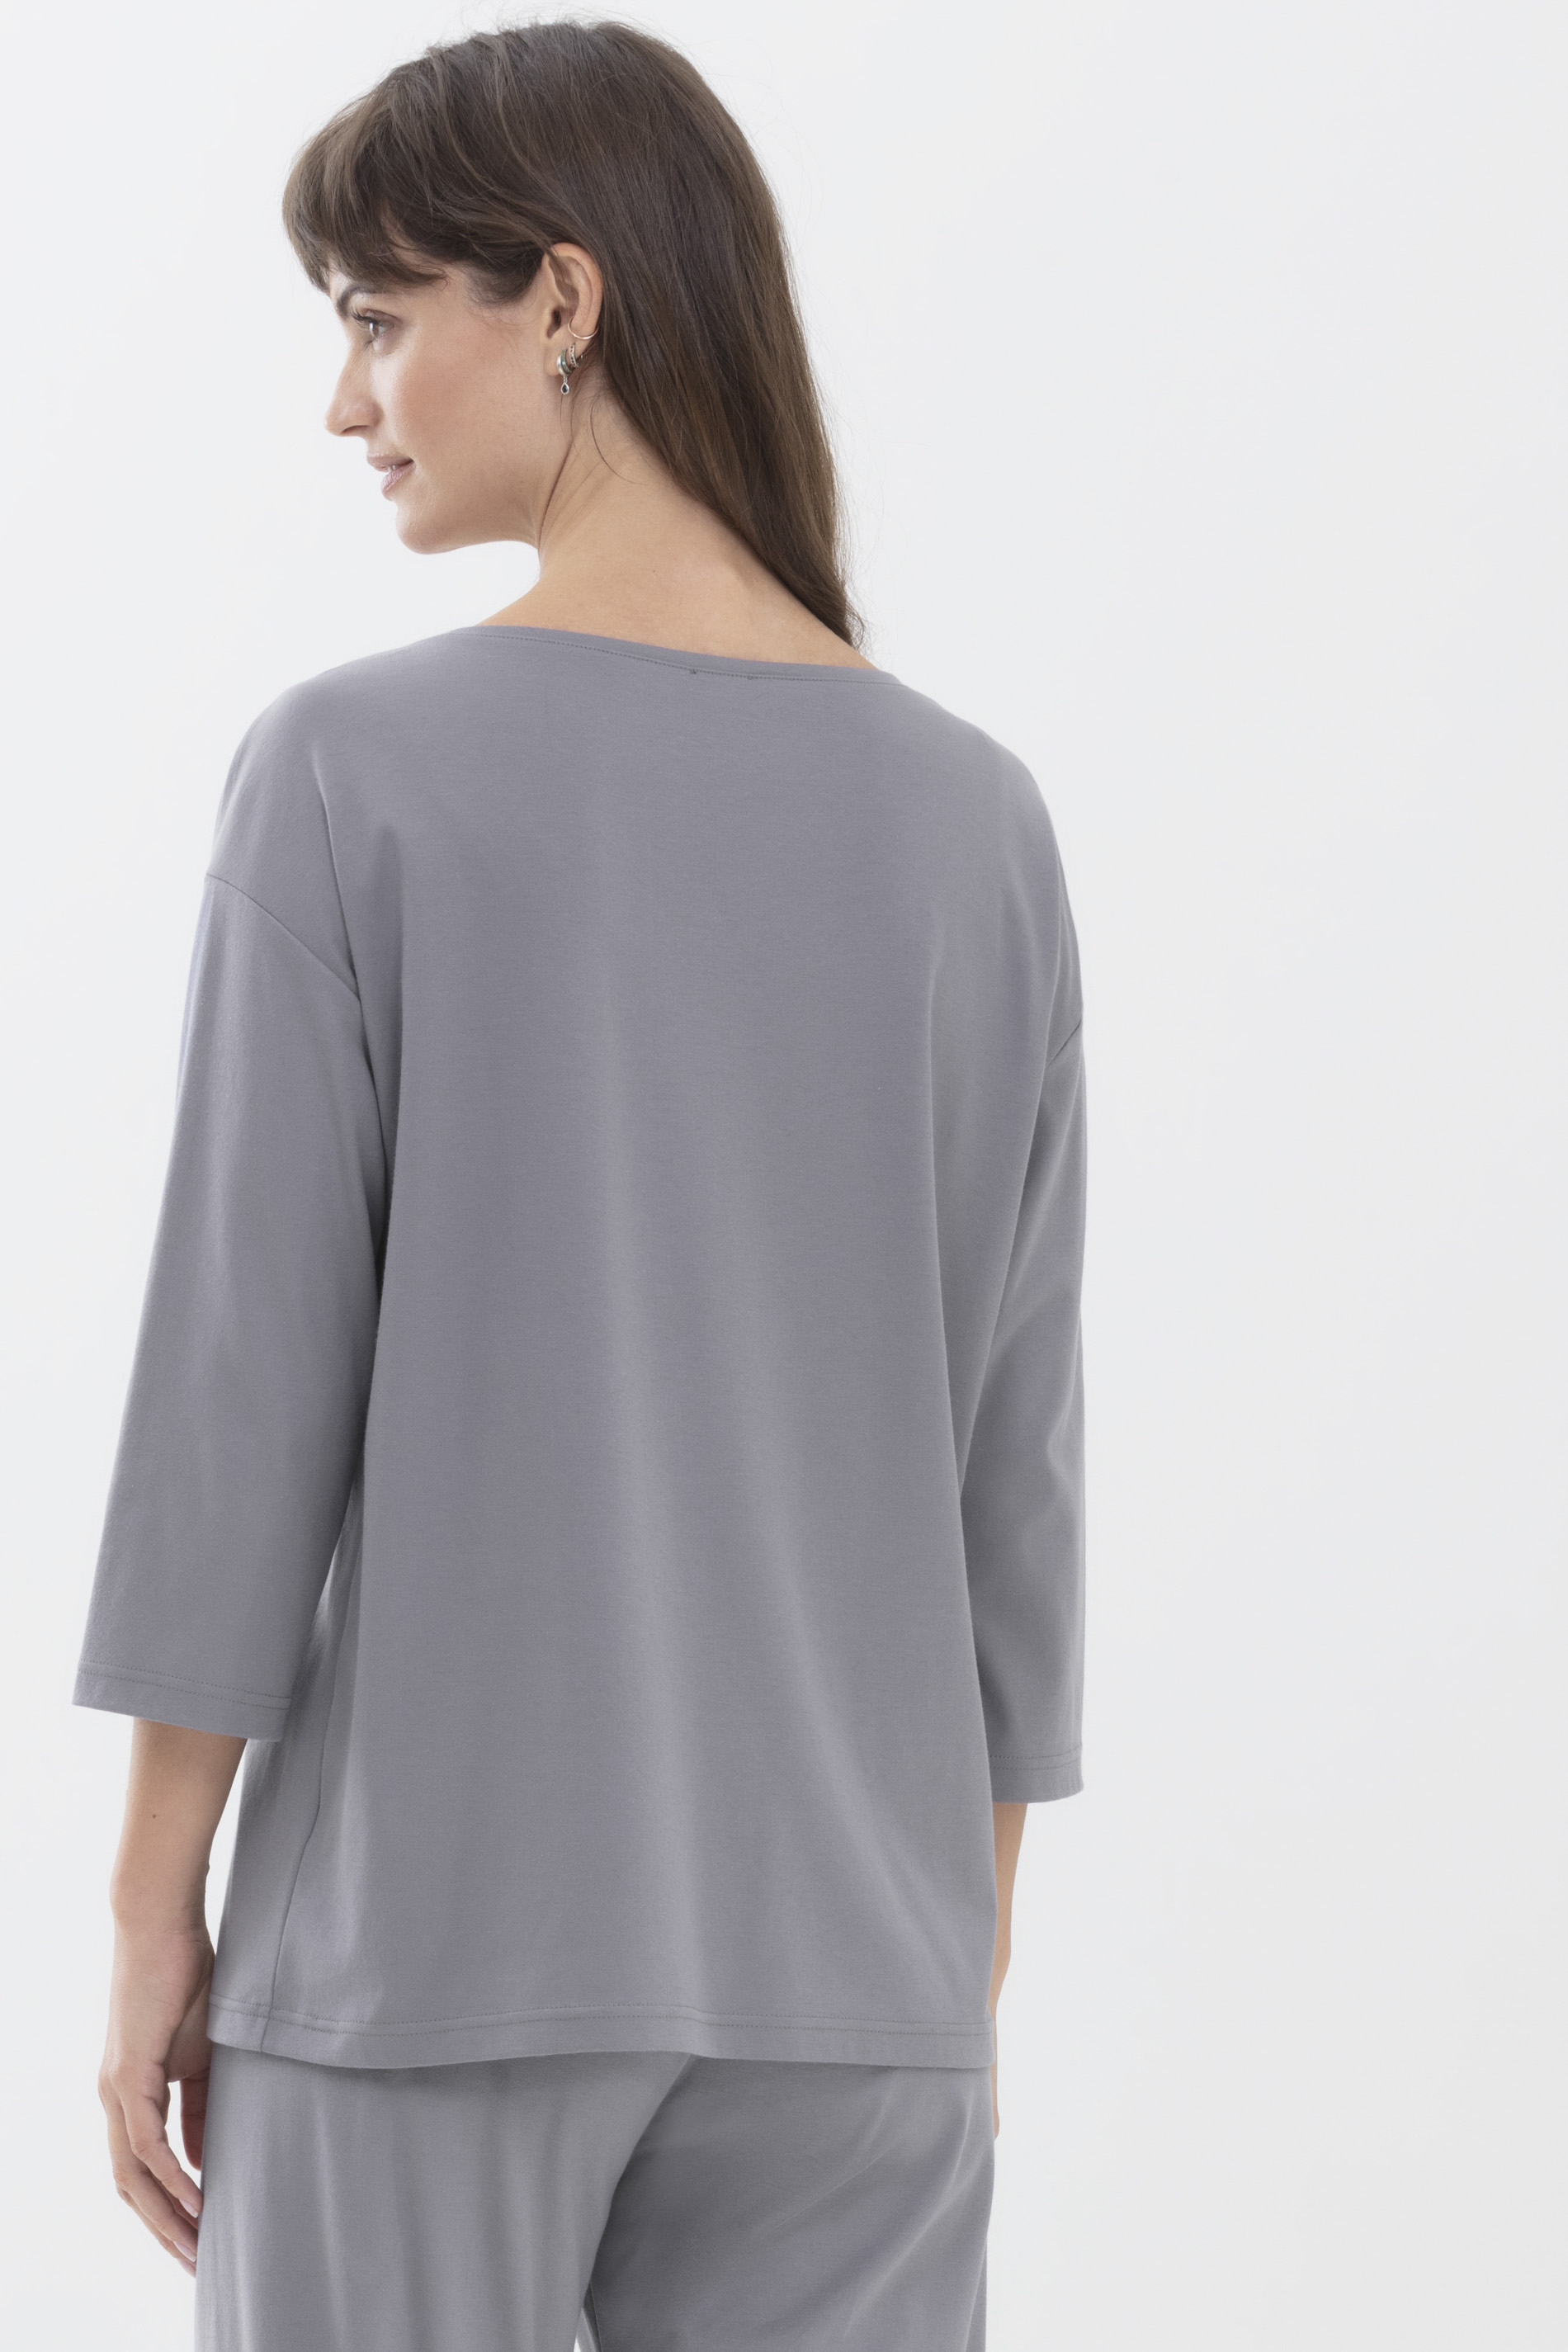 Shirt Lovely Grey Serie Sleepsation Rückansicht | mey®